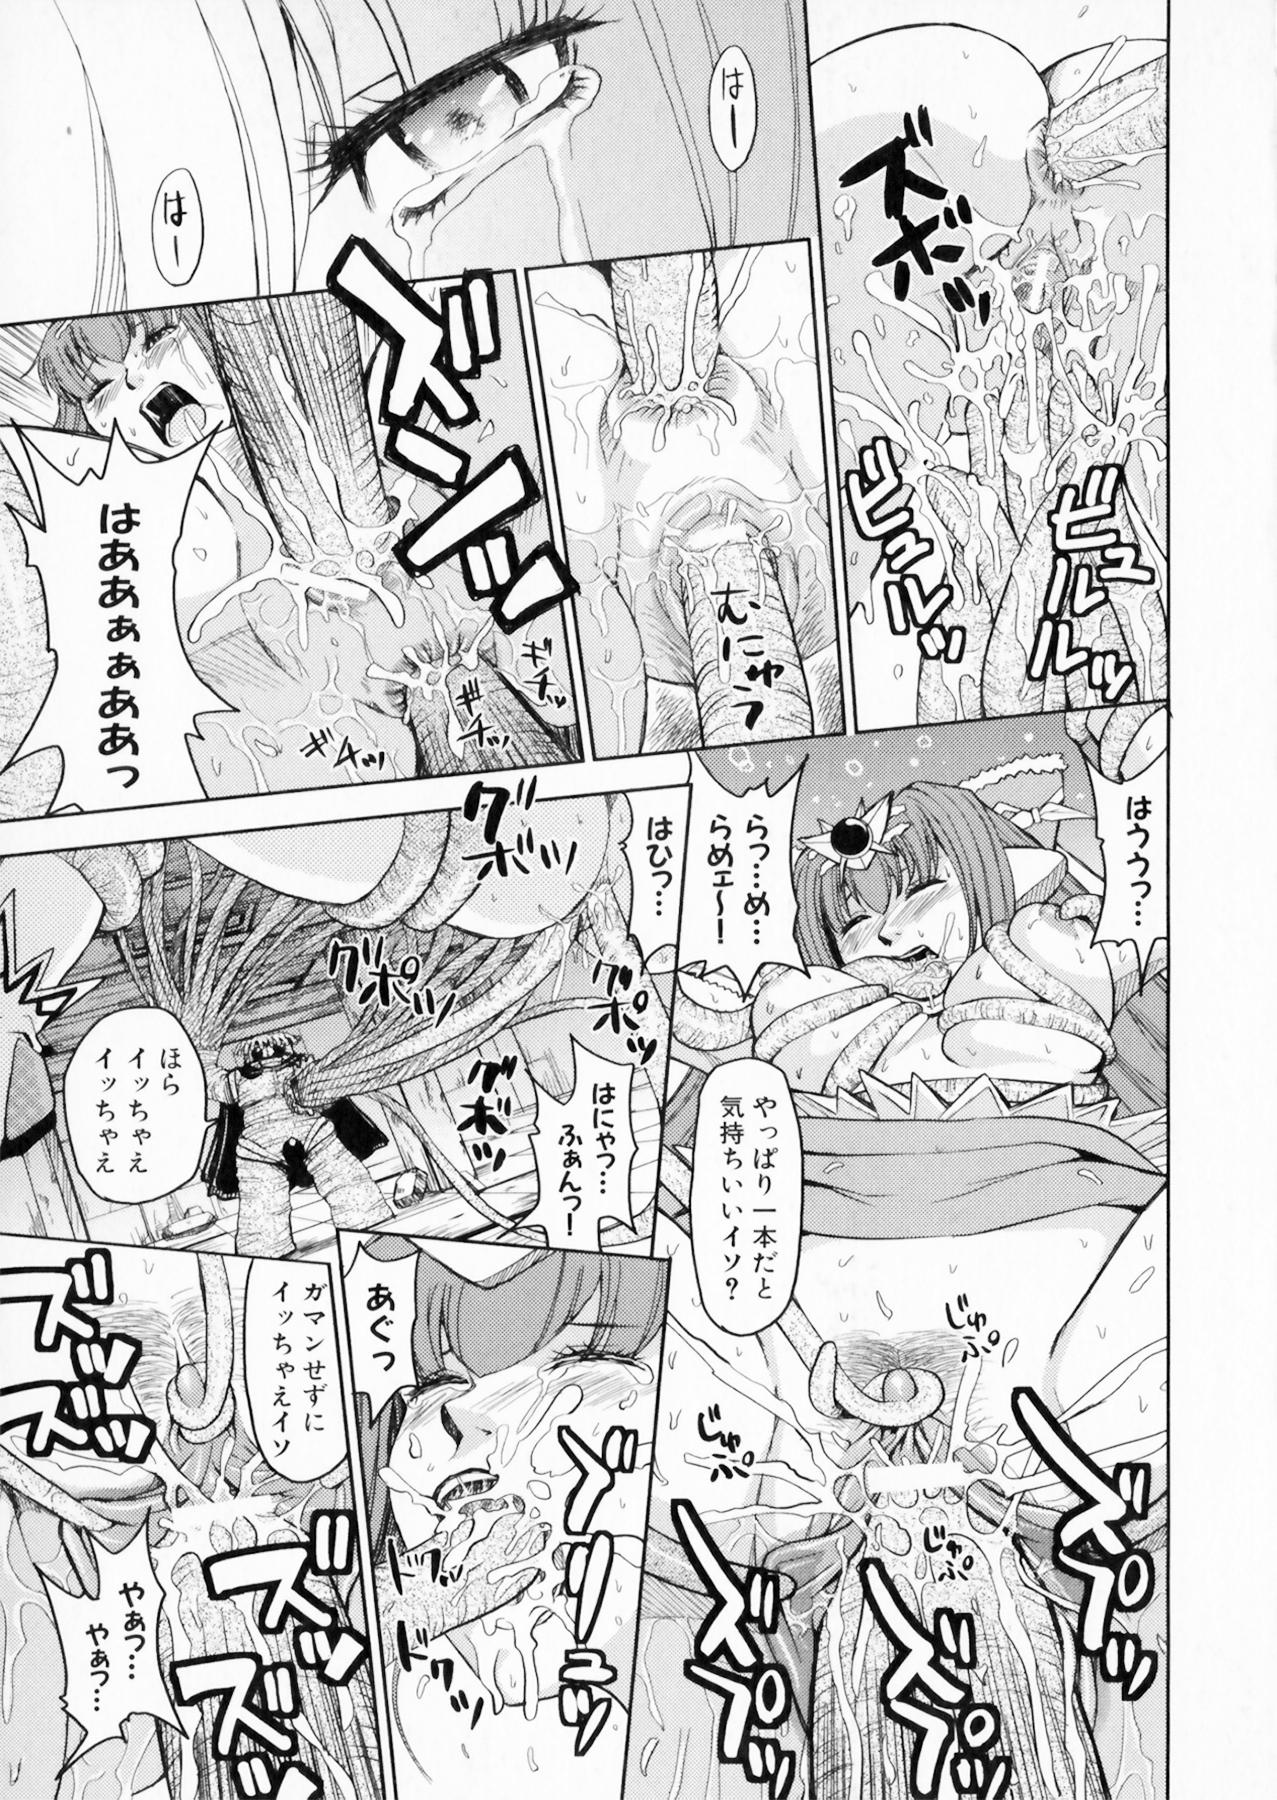 Suisei Tenshi Prima Veil Zwei Anthology Comic EX 143